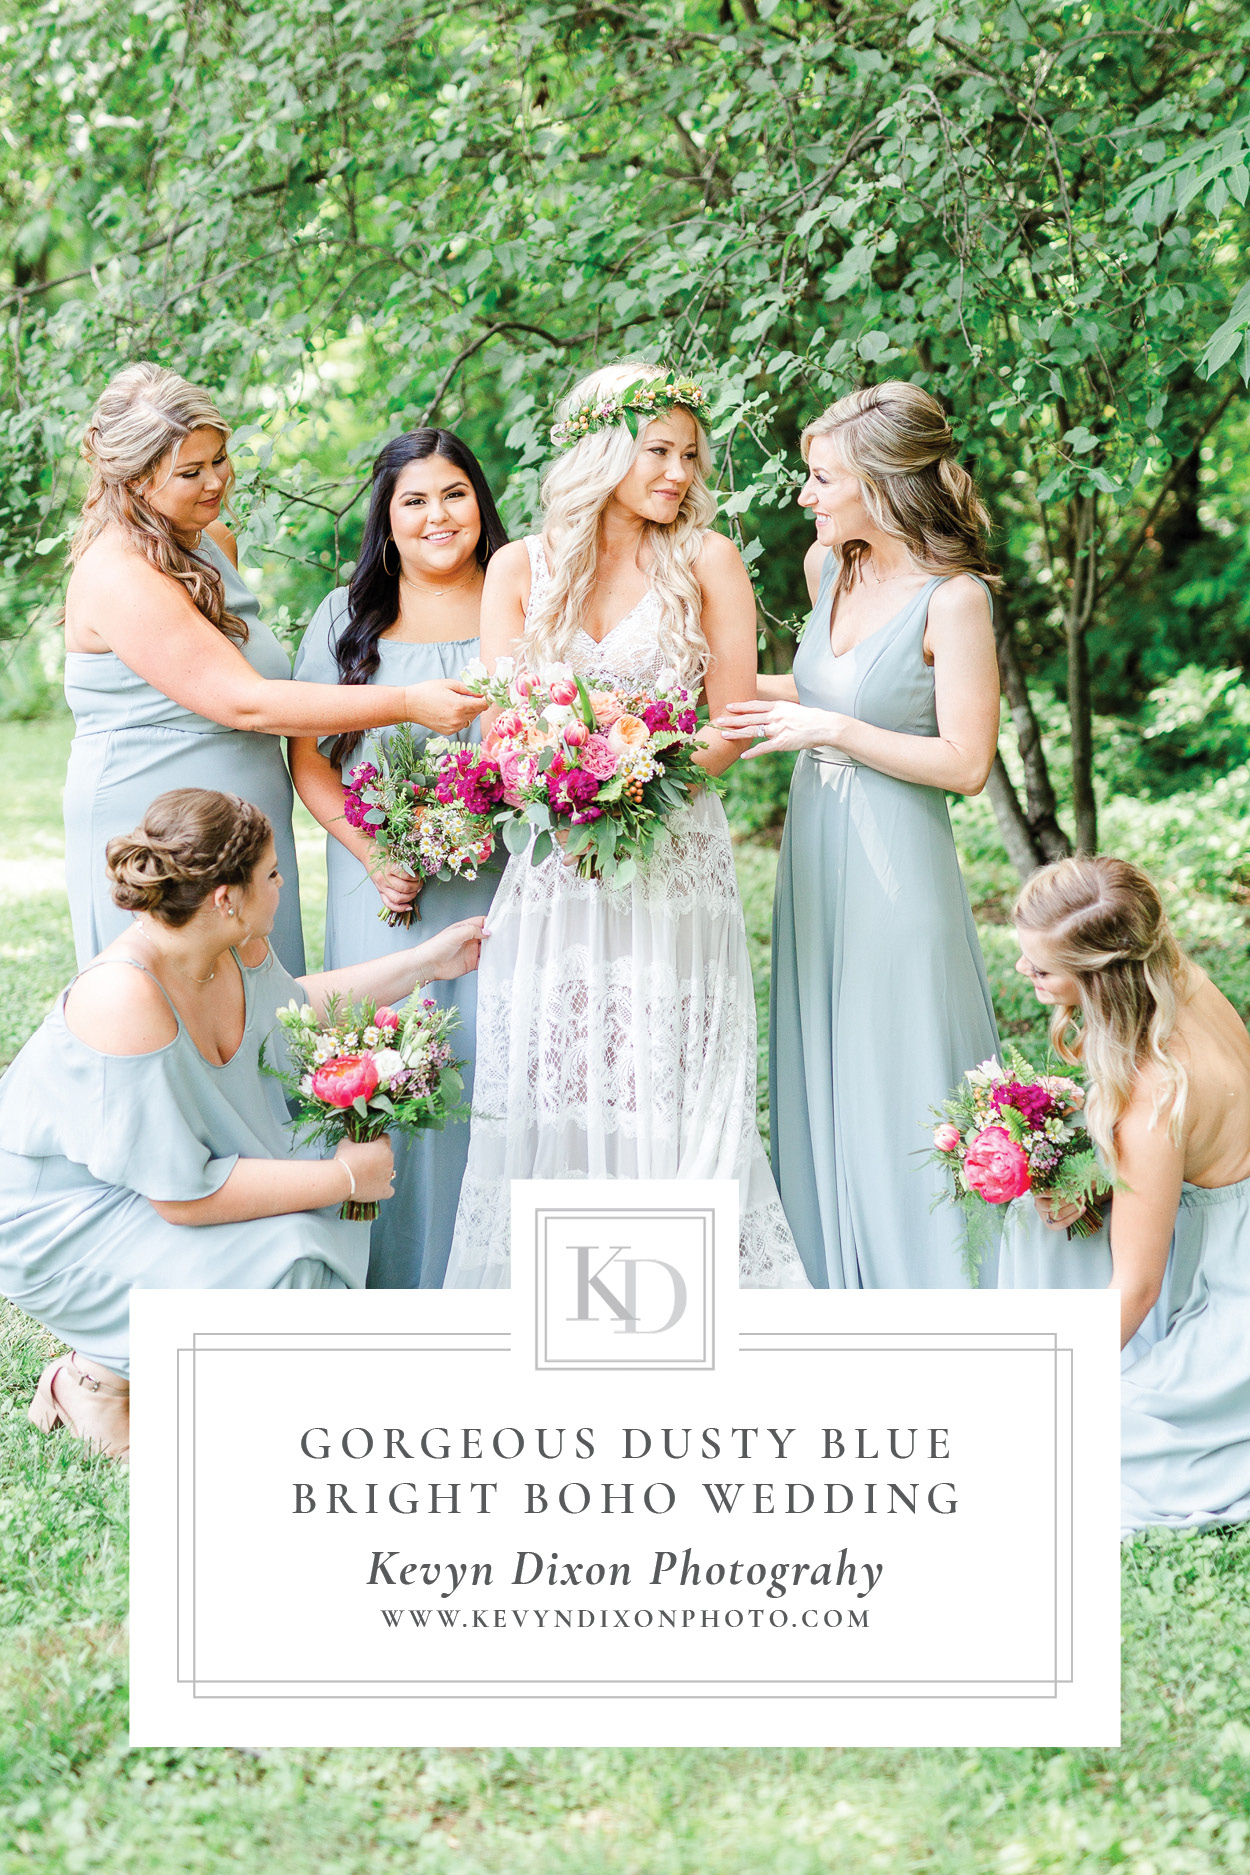 Gorgeous Dusty Blue Bright Boho Wedding Pin Image